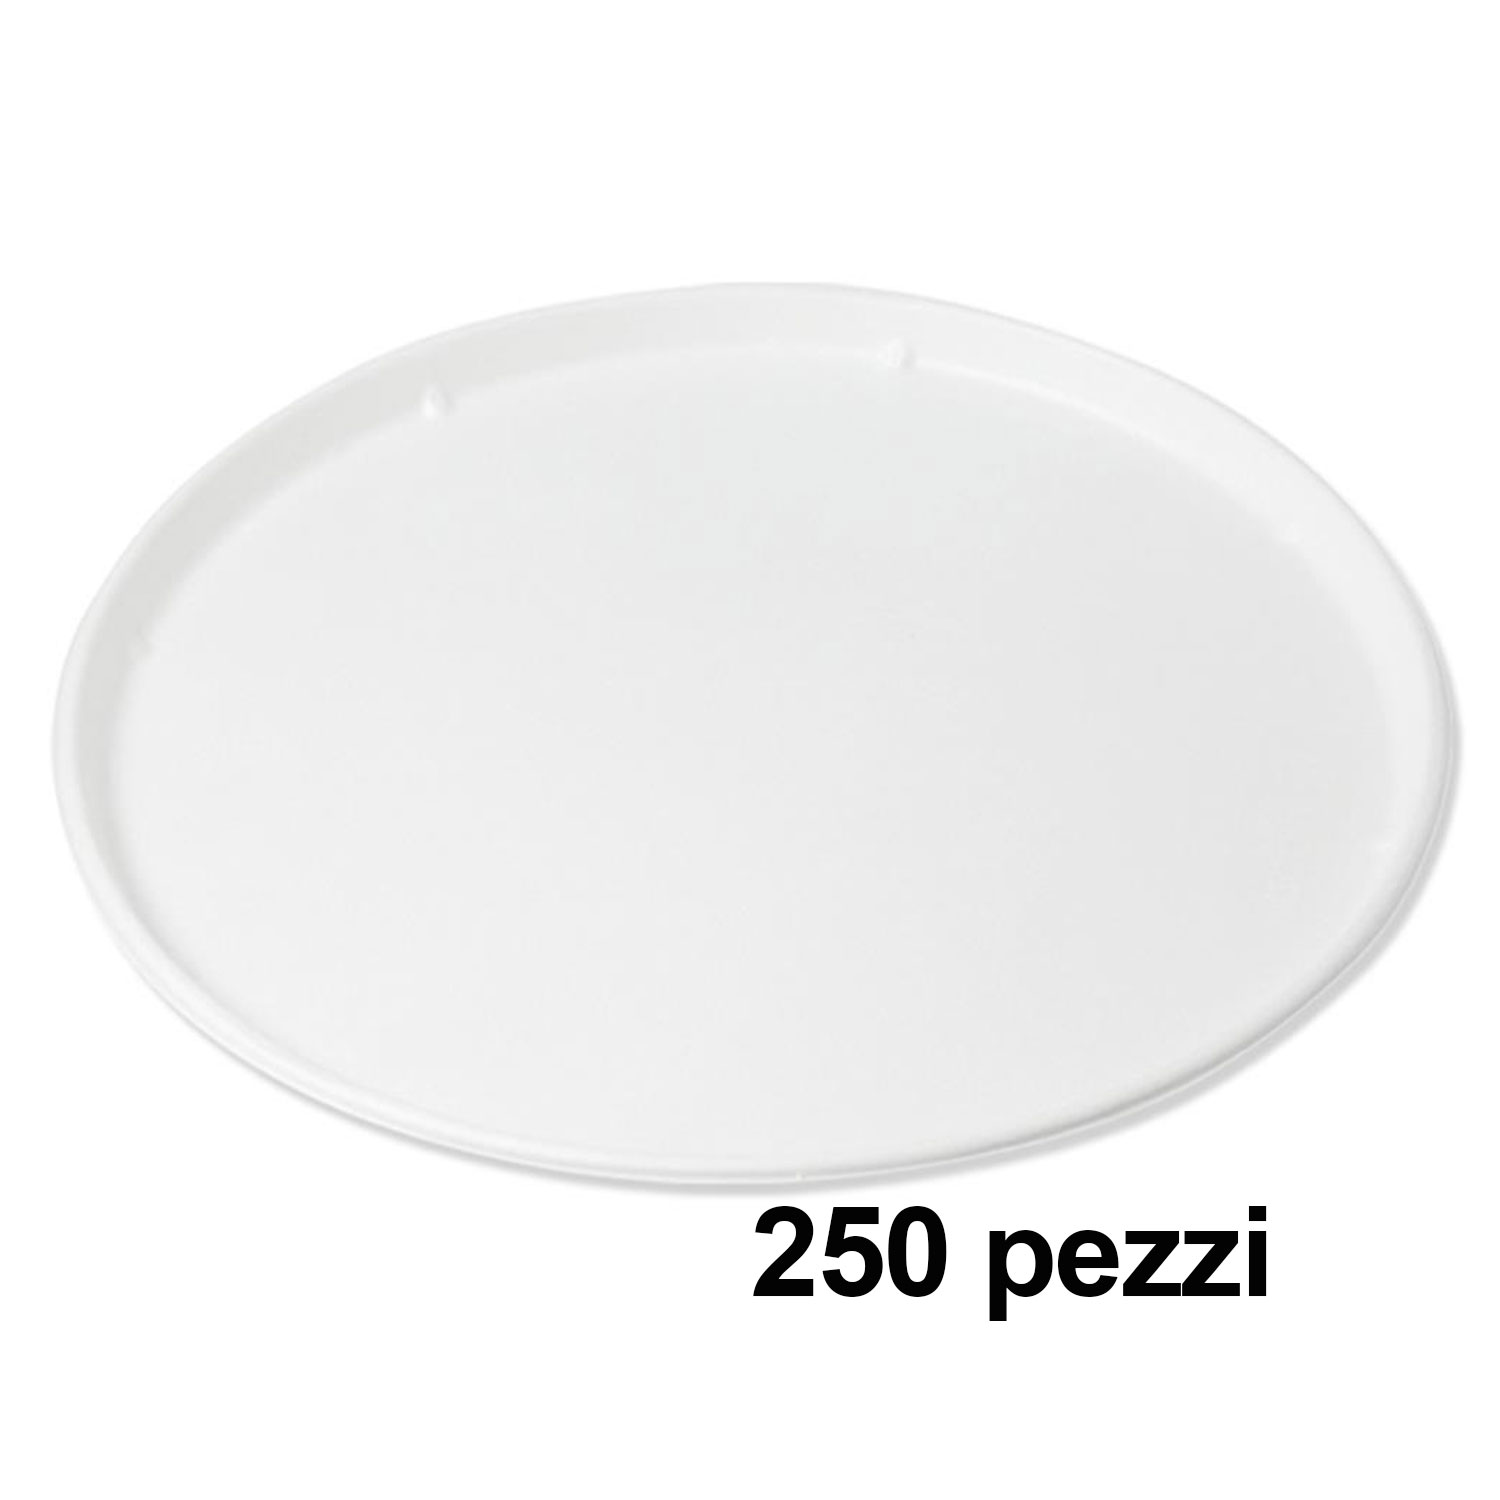 Biodegradabili Compostabili No Plastica in Polpa di cellulosa Exxens 50 Piatti Pizza Grandi 33 cm Bianchi di Carta 